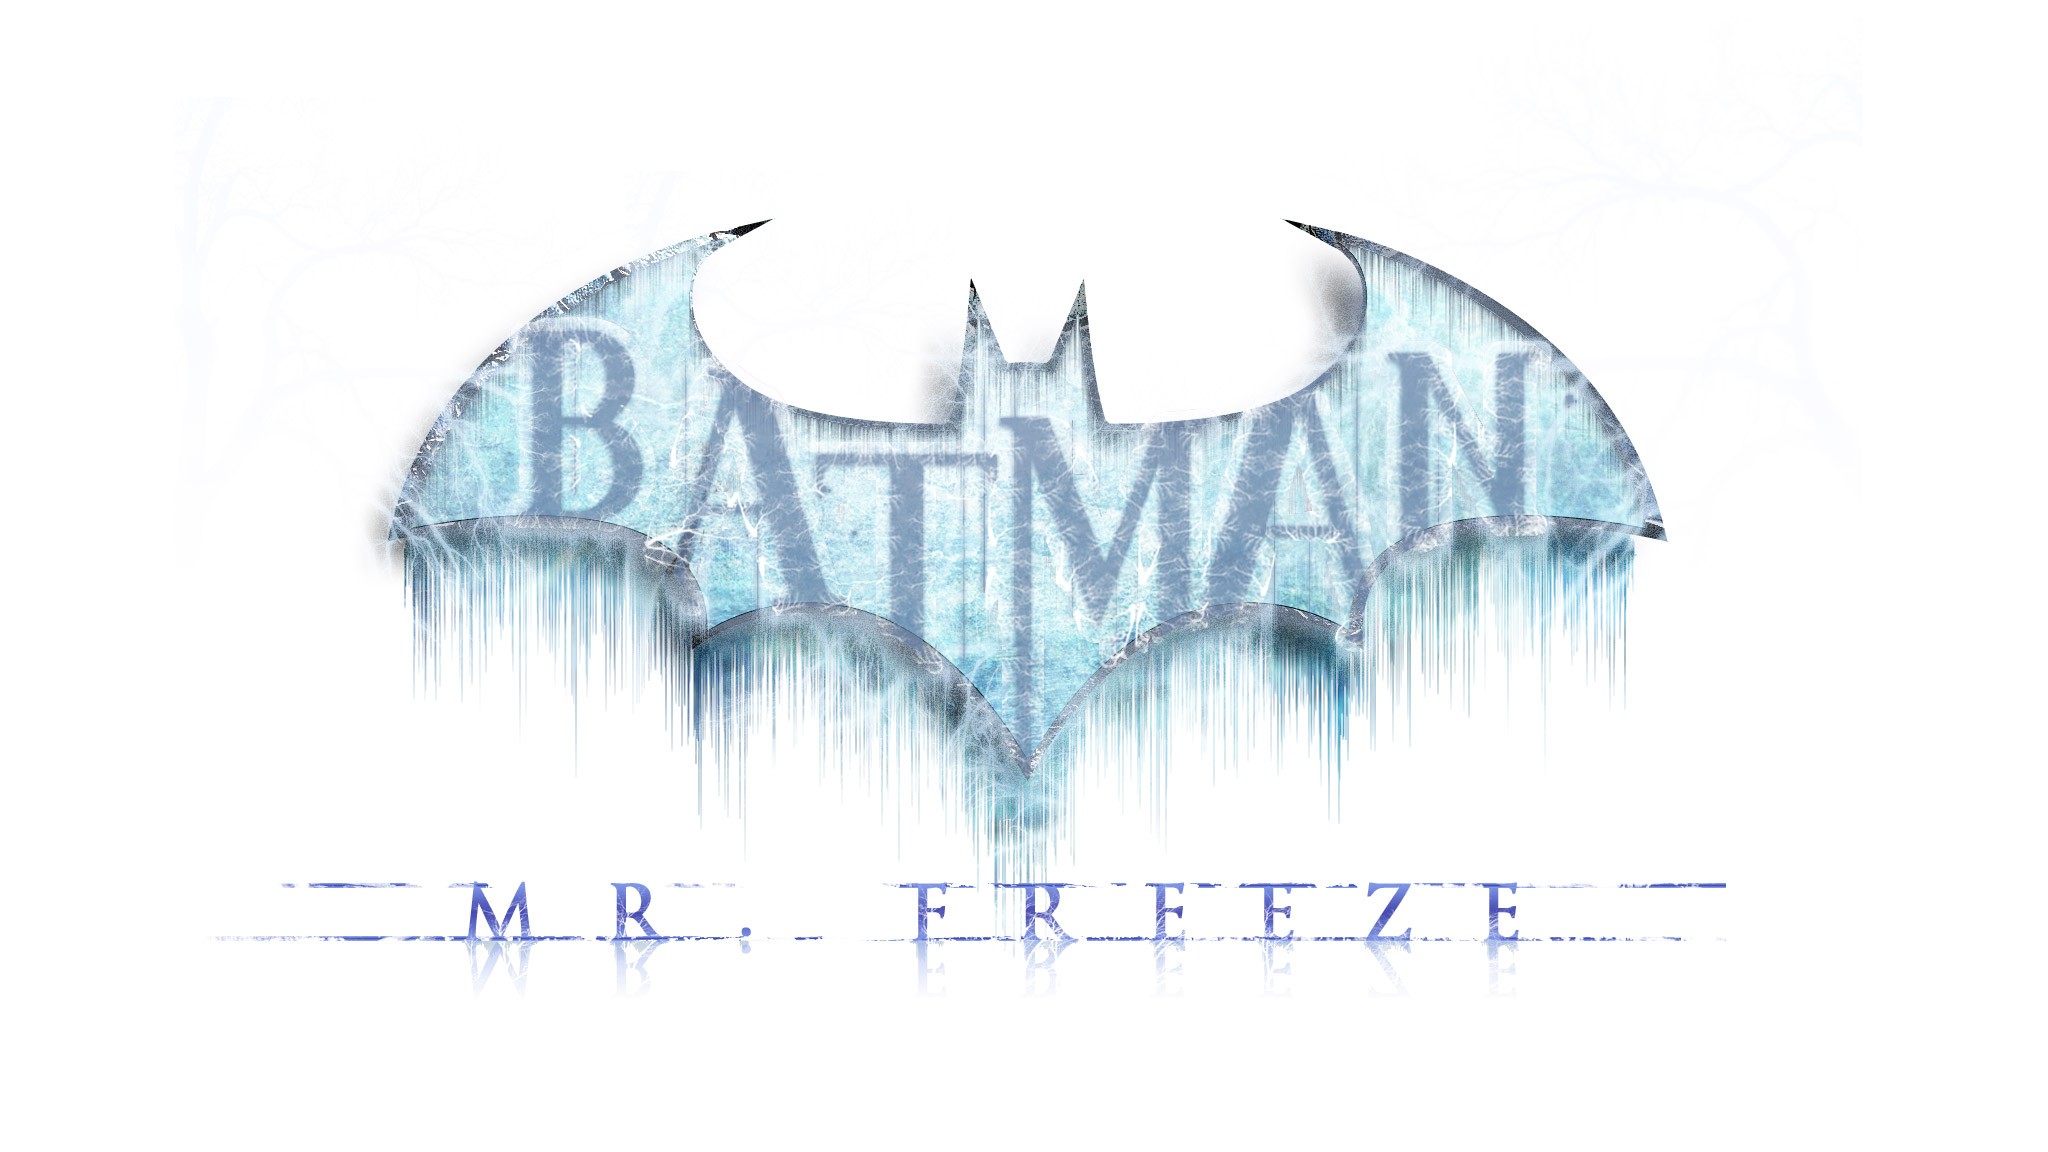 Скачать картинку Видеоигры, Бэтмен, Batman: Аркхем Сити в телефон бесплатно.